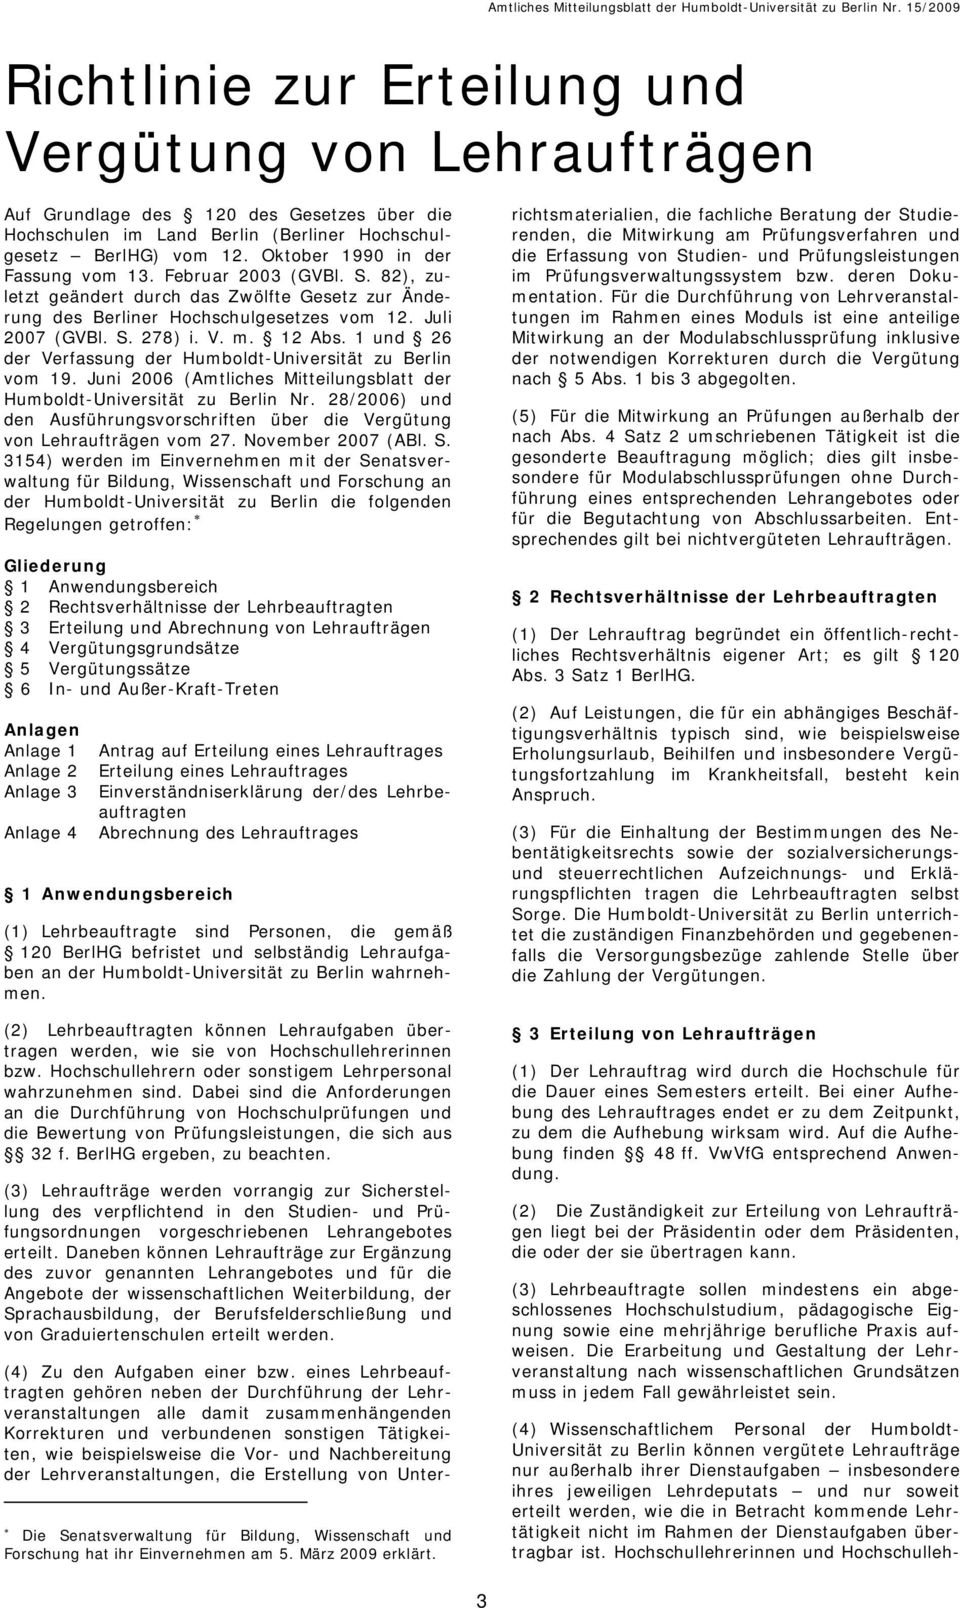 1 und 26 der Verfassung der Humboldt-Universität zu Berlin vom 19. Juni 2006 (Amtliches Mitteilungsblatt der Humboldt-Universität zu Berlin Nr.